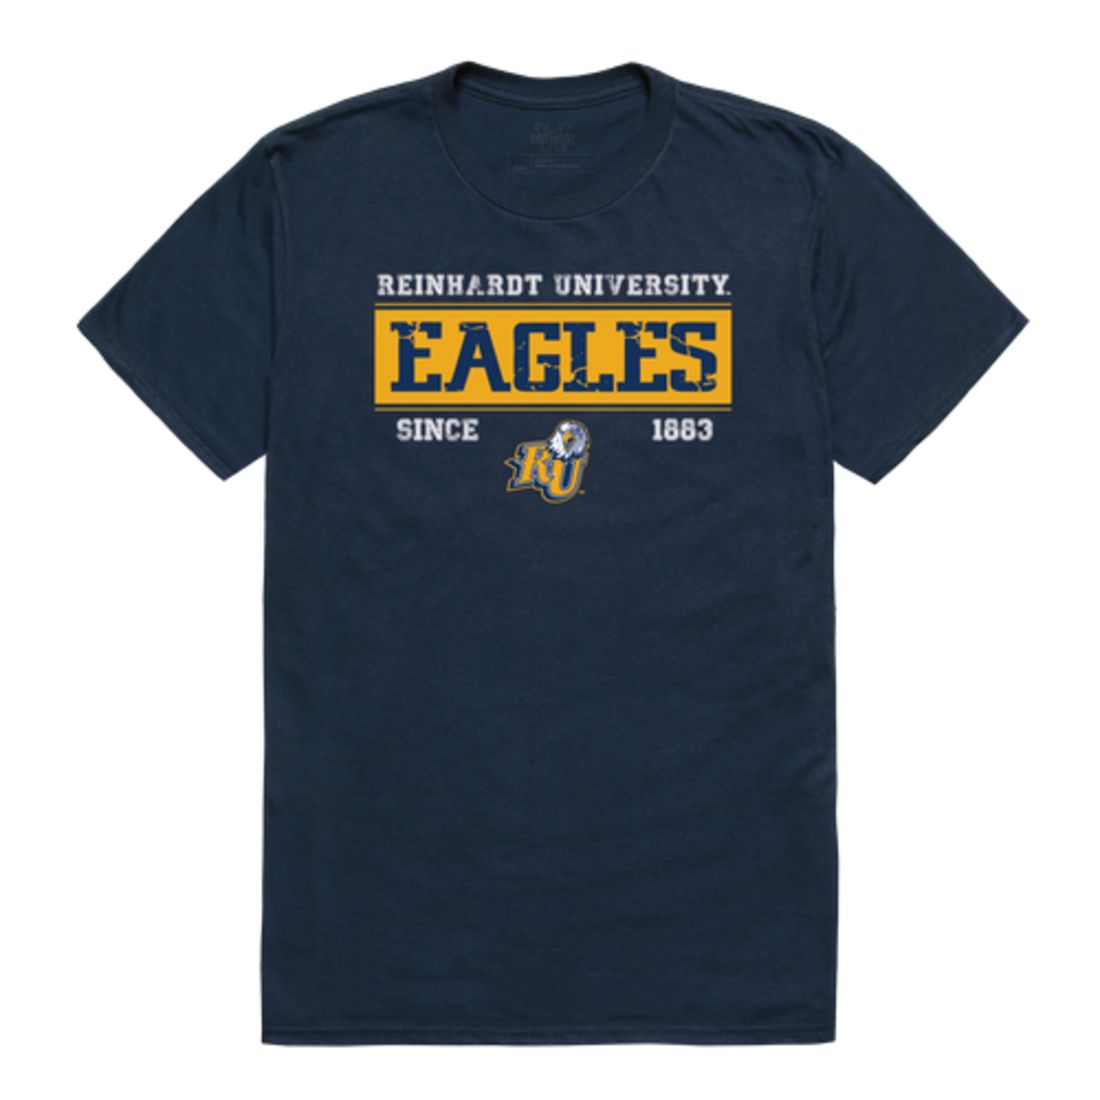 Reinhardt University Eagles Established T-Shirt